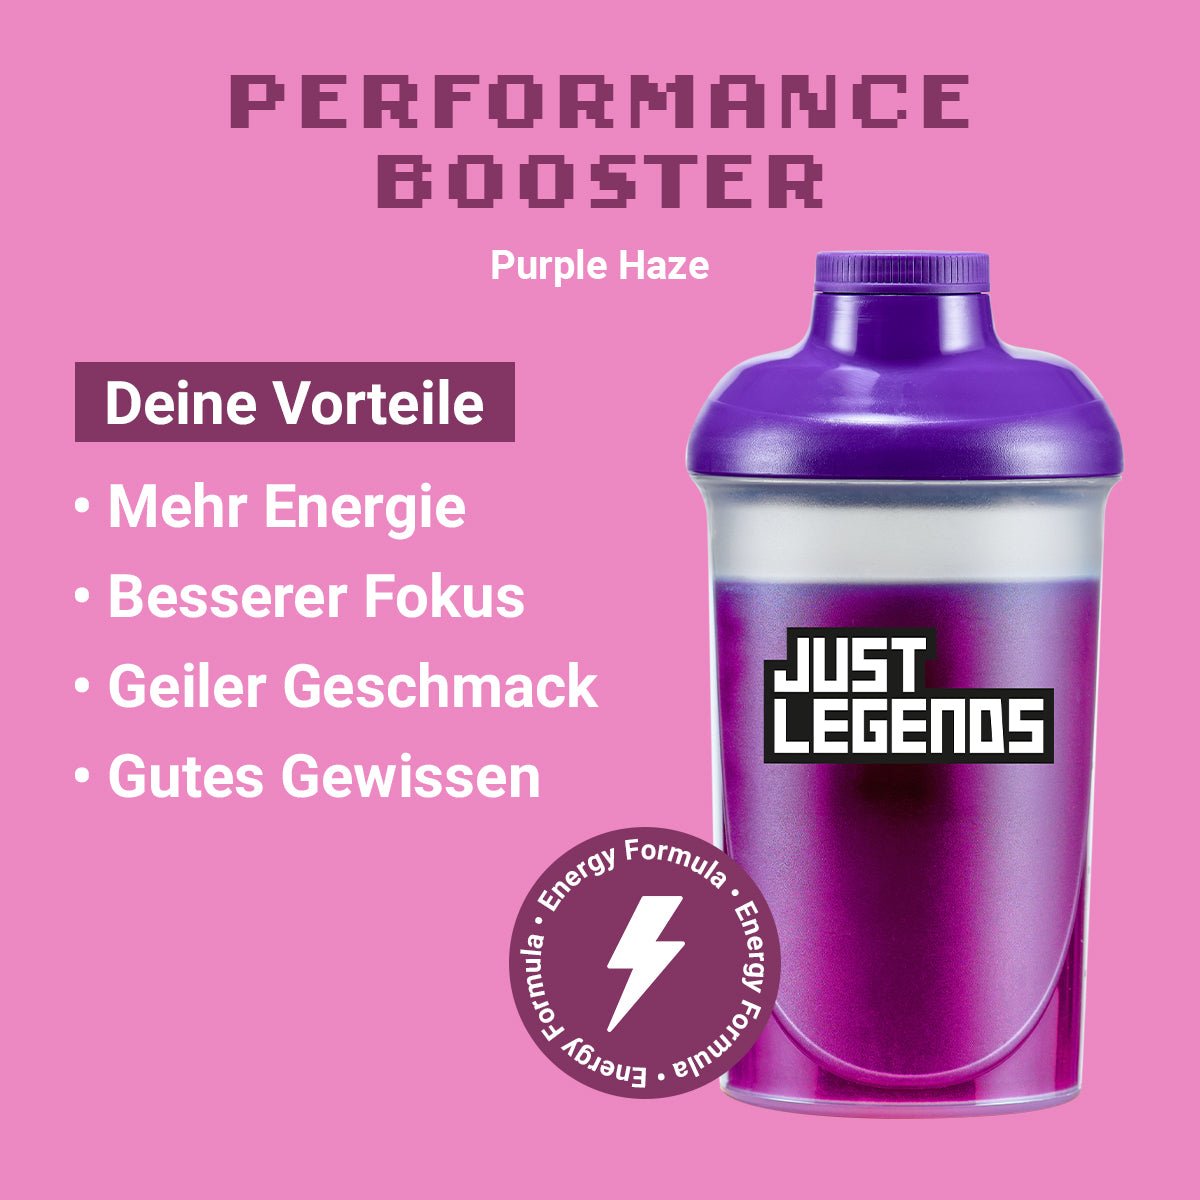 Just Legends Performance Booster Purple Haze | Funktionaler, veganer Performance Booster auf Pulverbasis ohne Zucker, mit wenig Kalorien, vielen Vitaminen und natürlichen Aromen.